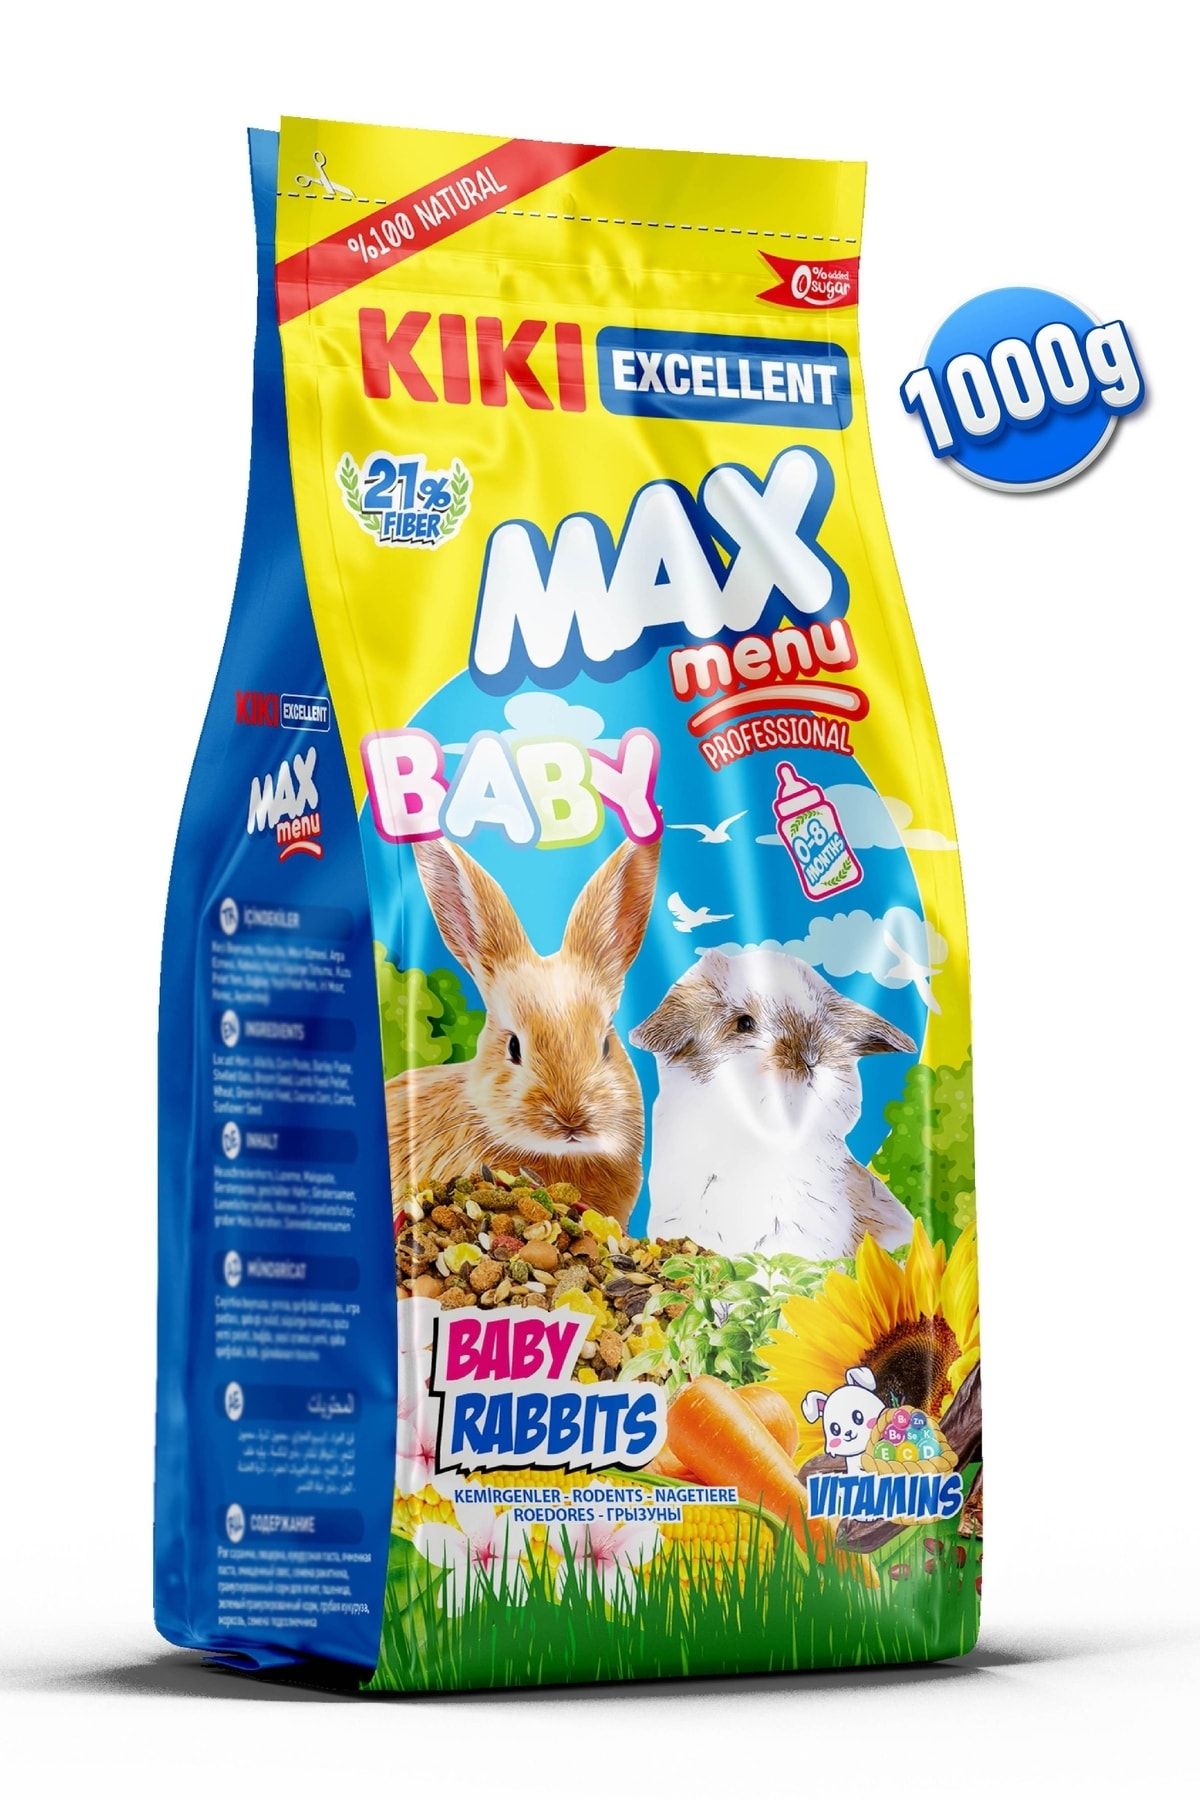 Kiki Excellent Kemirgen Max Menu Baby Rabbits Yavru Tavşan Yemi 1000 Gr. Kg304